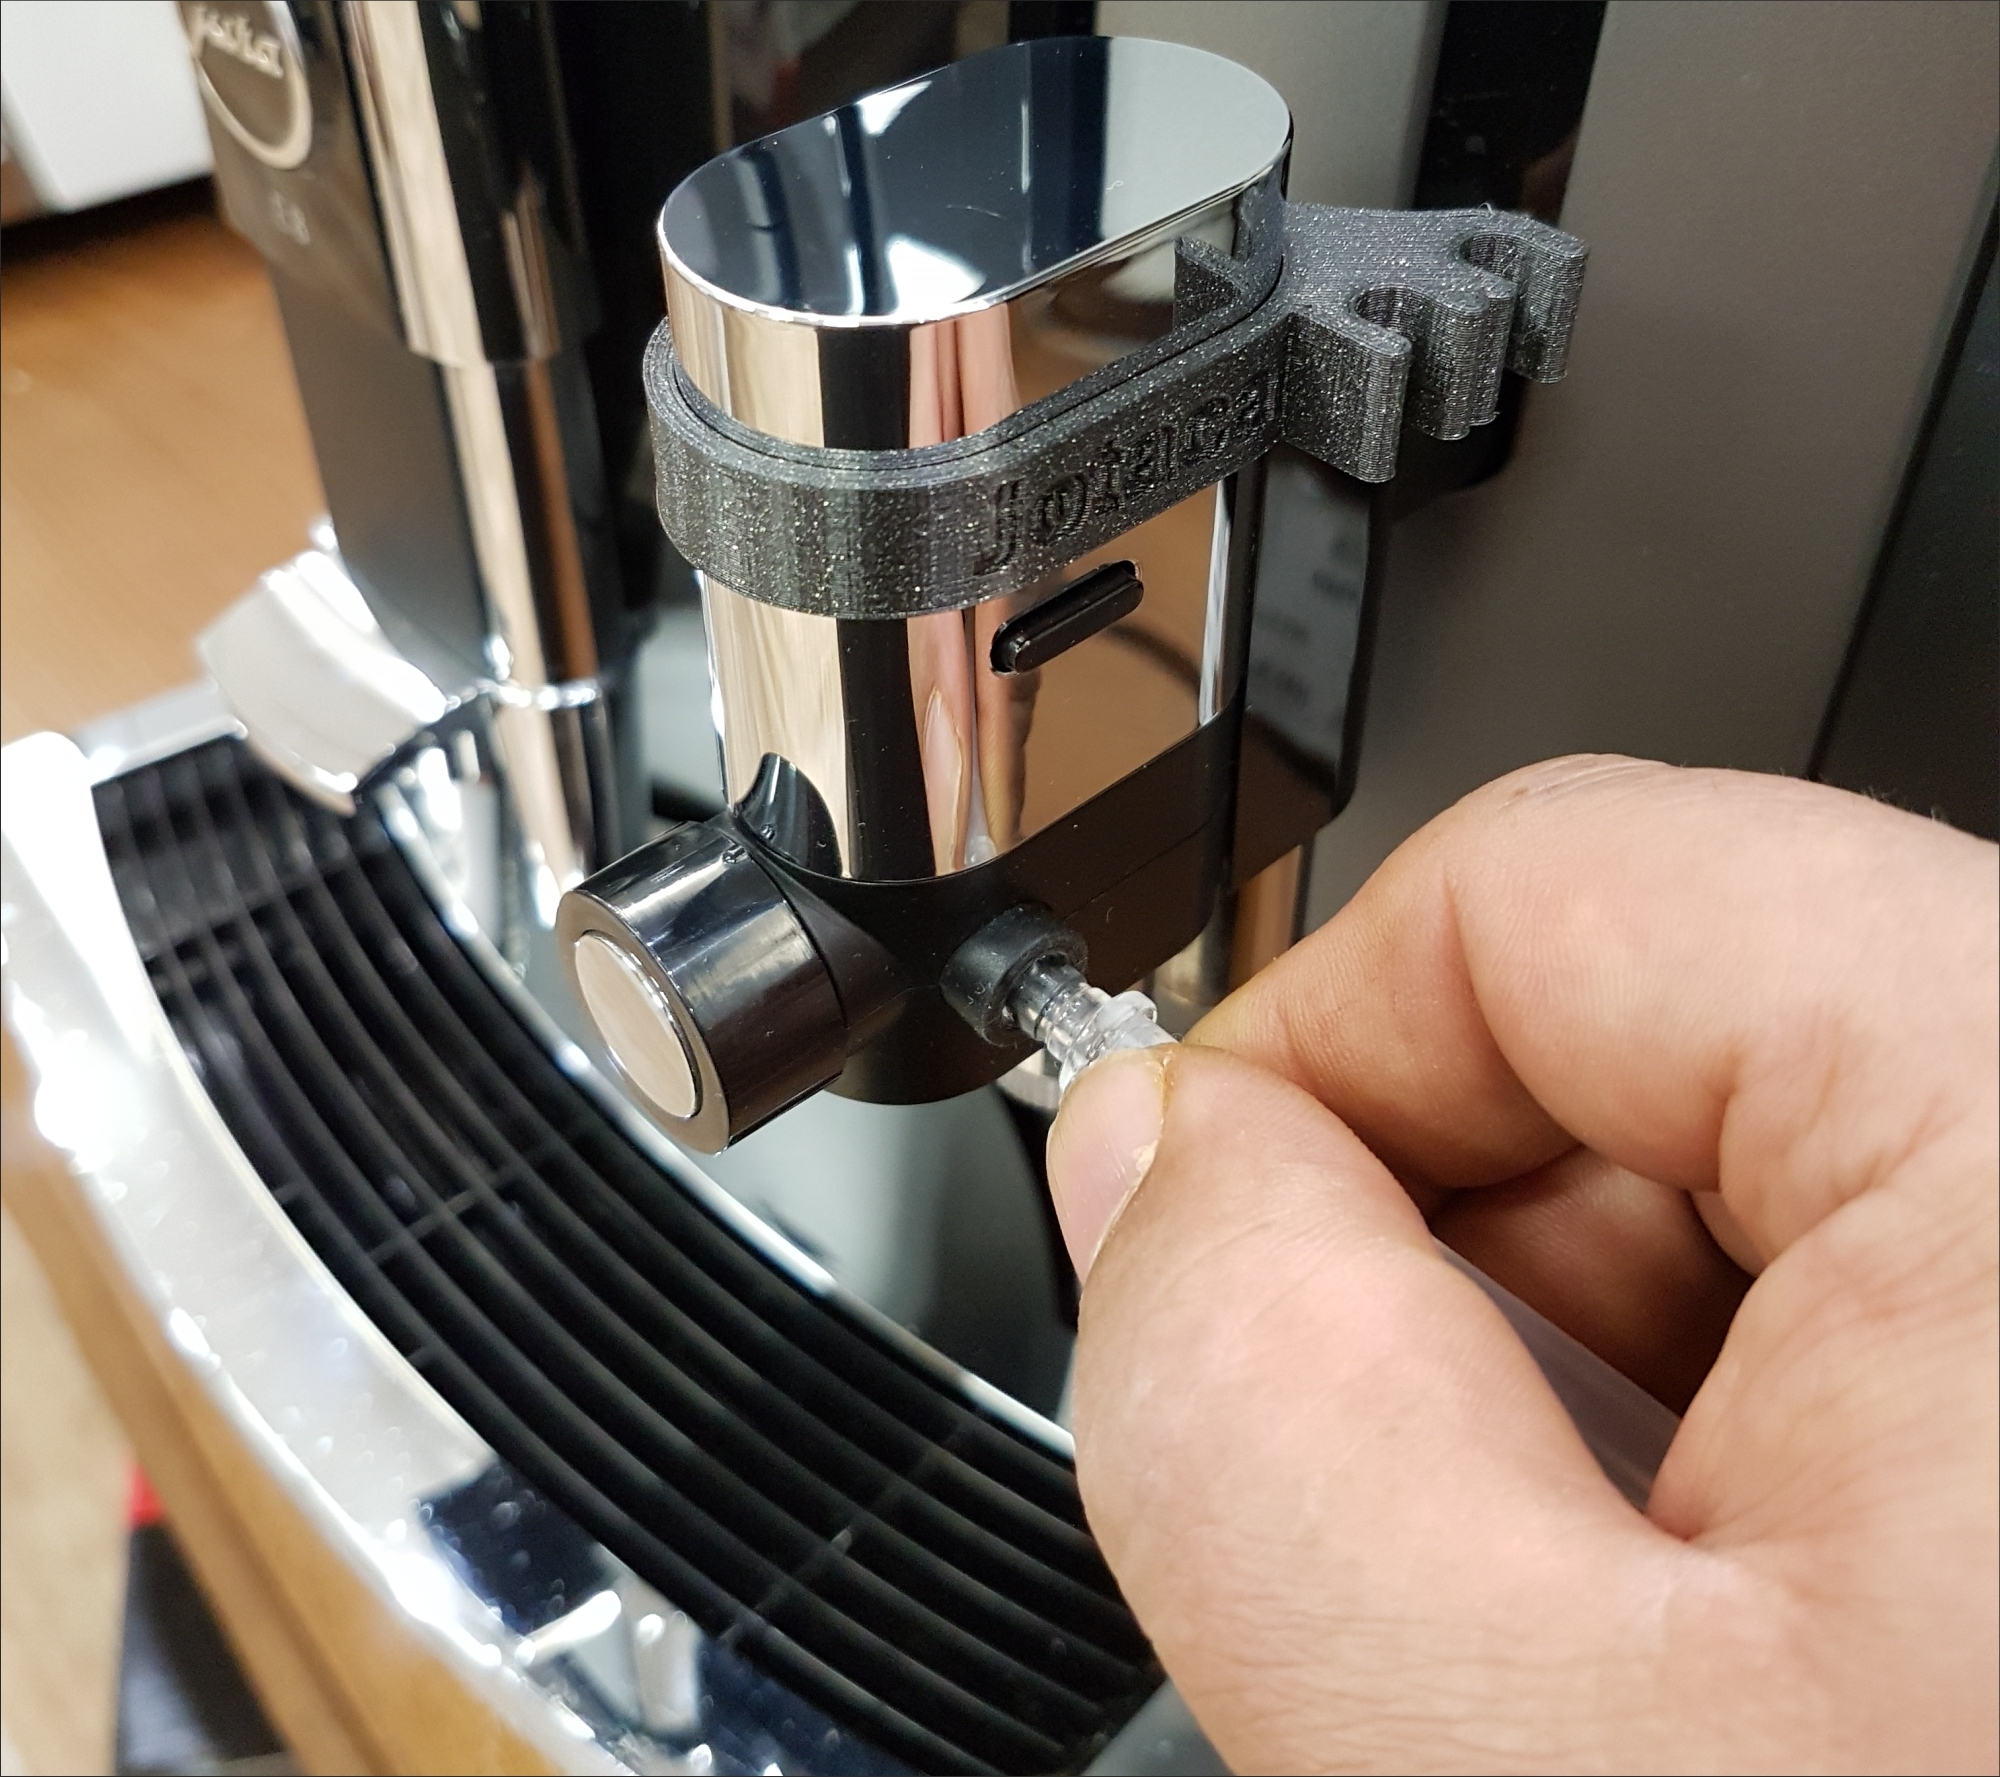 Nippel Milchschlauch Haltering 10 Adapter mit Fluid I-Form RENZ